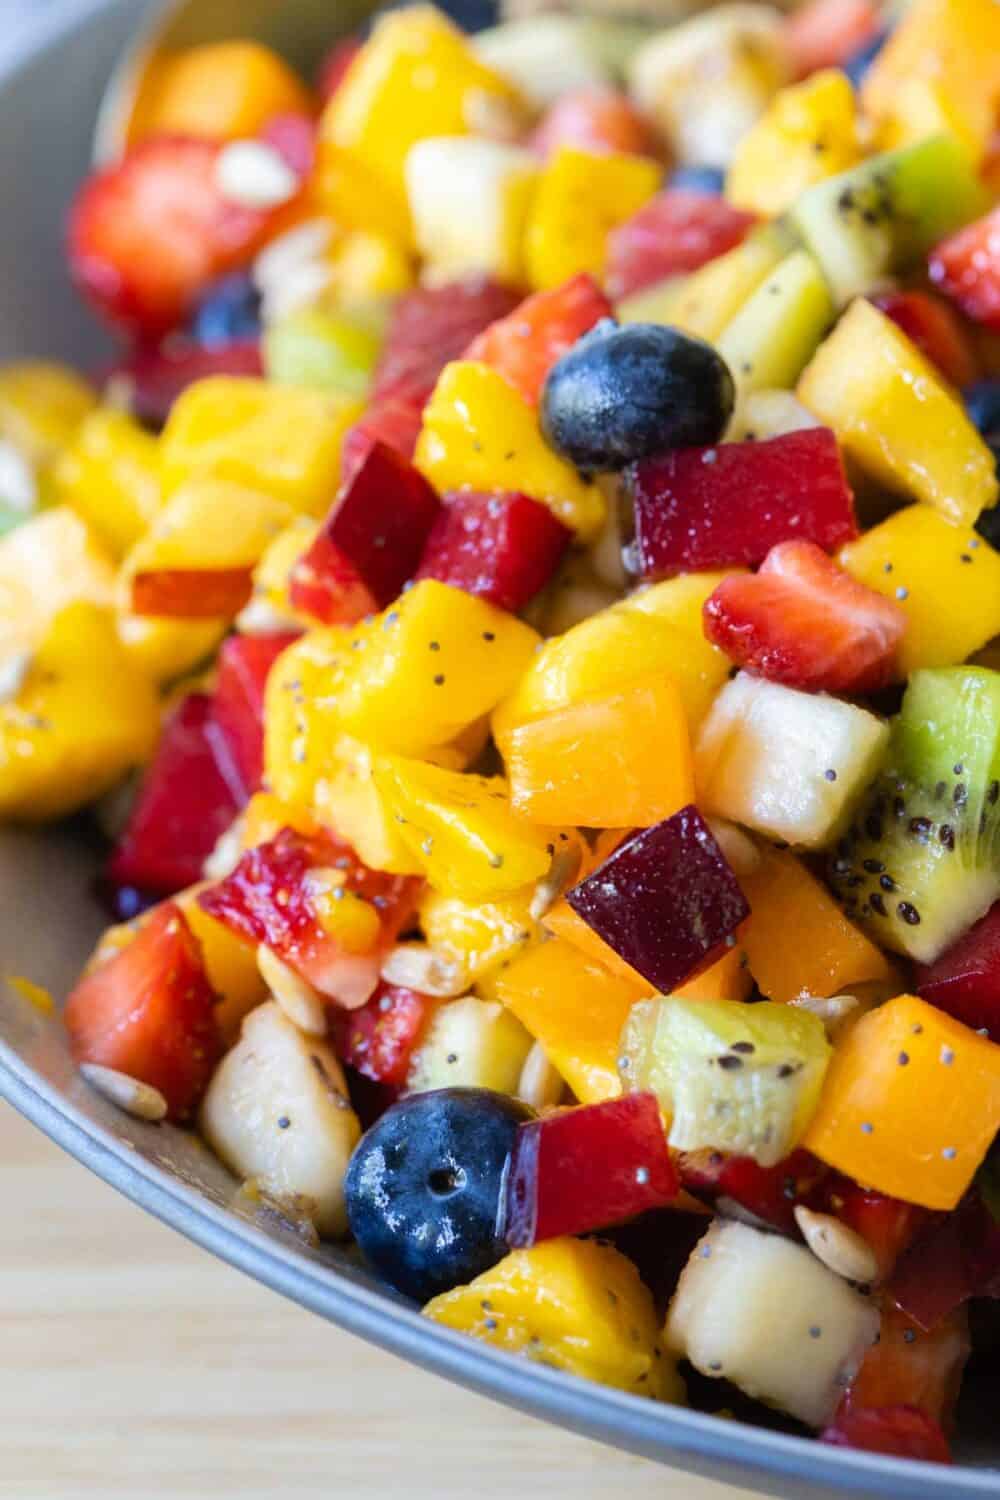 Closeup image of mixed up fruit salad.